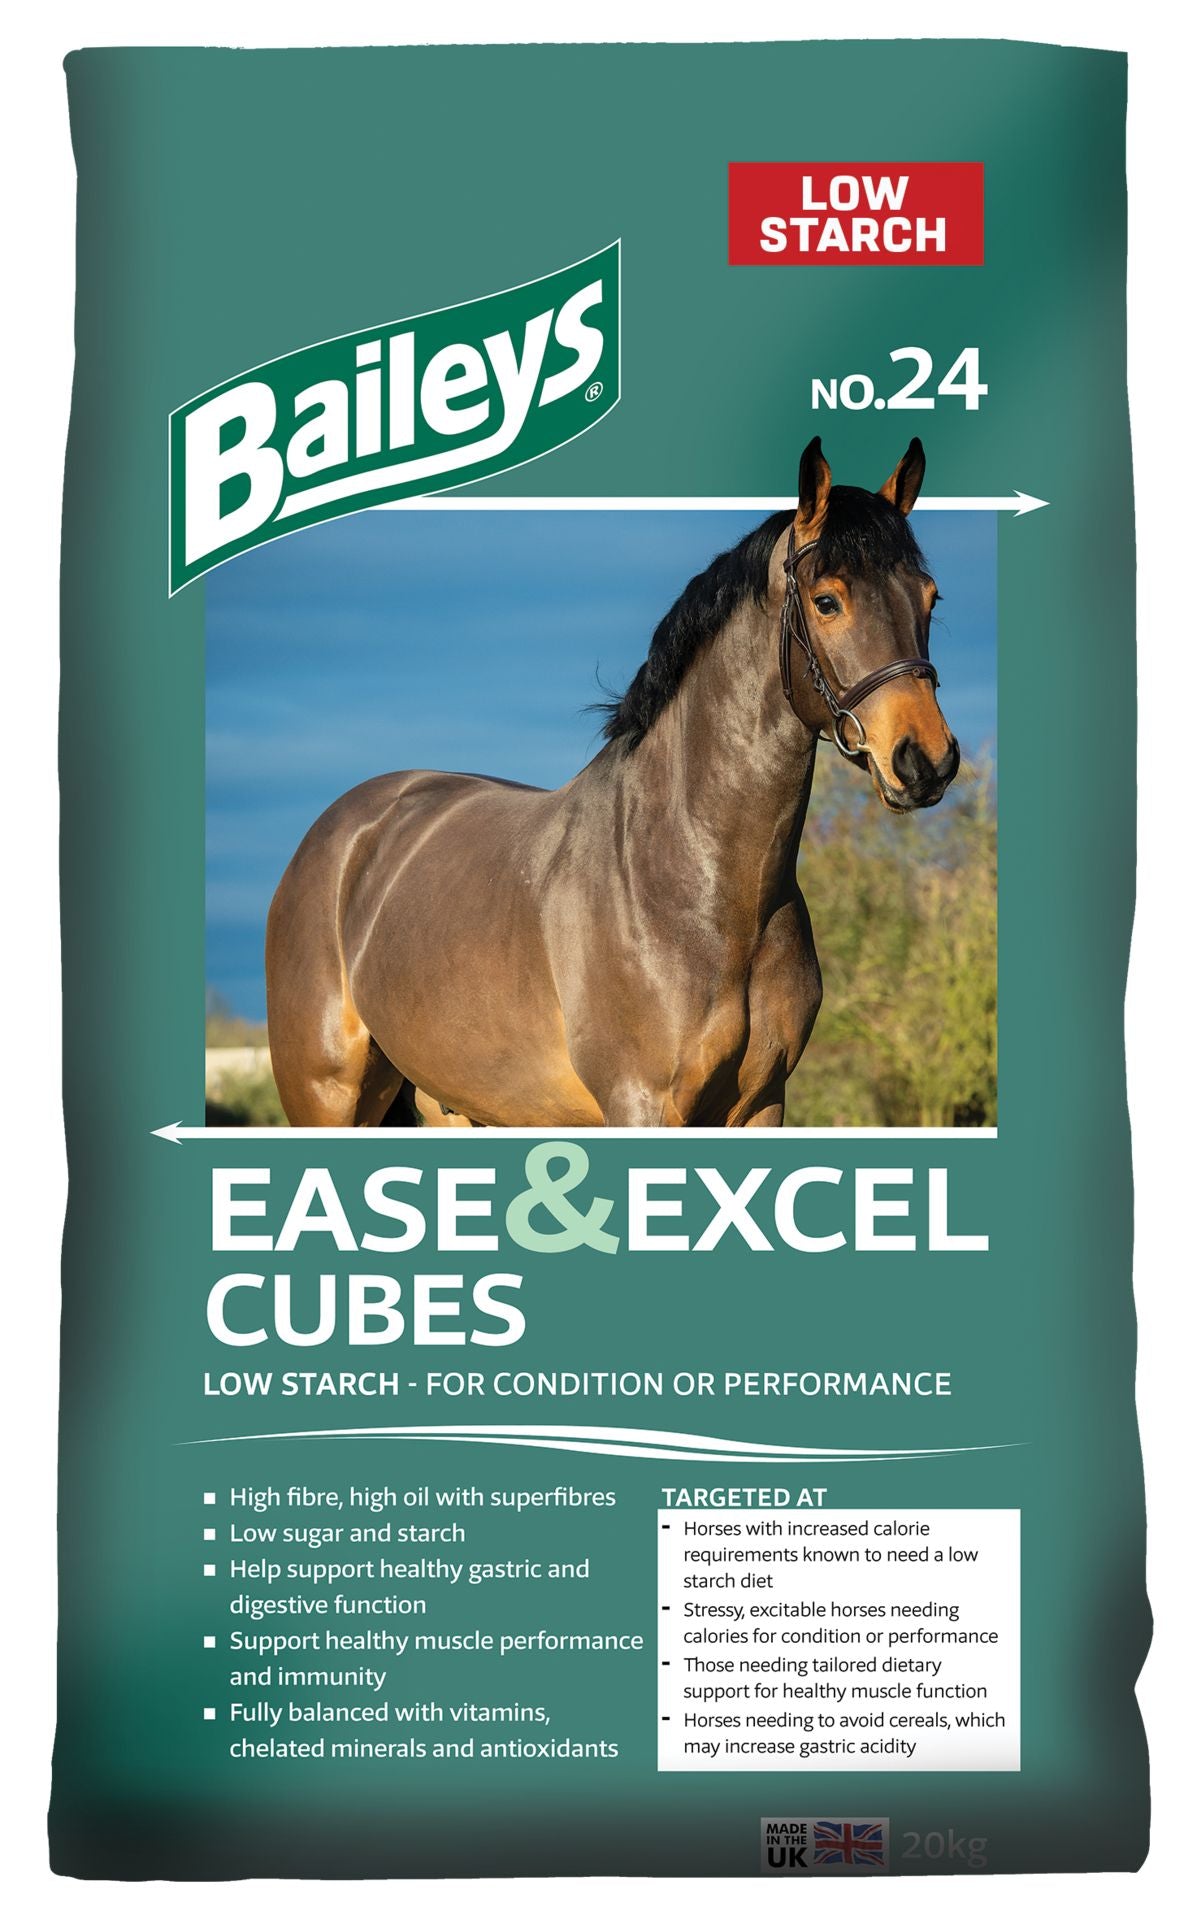 Baileys no 24 Ease & Excel Cubes